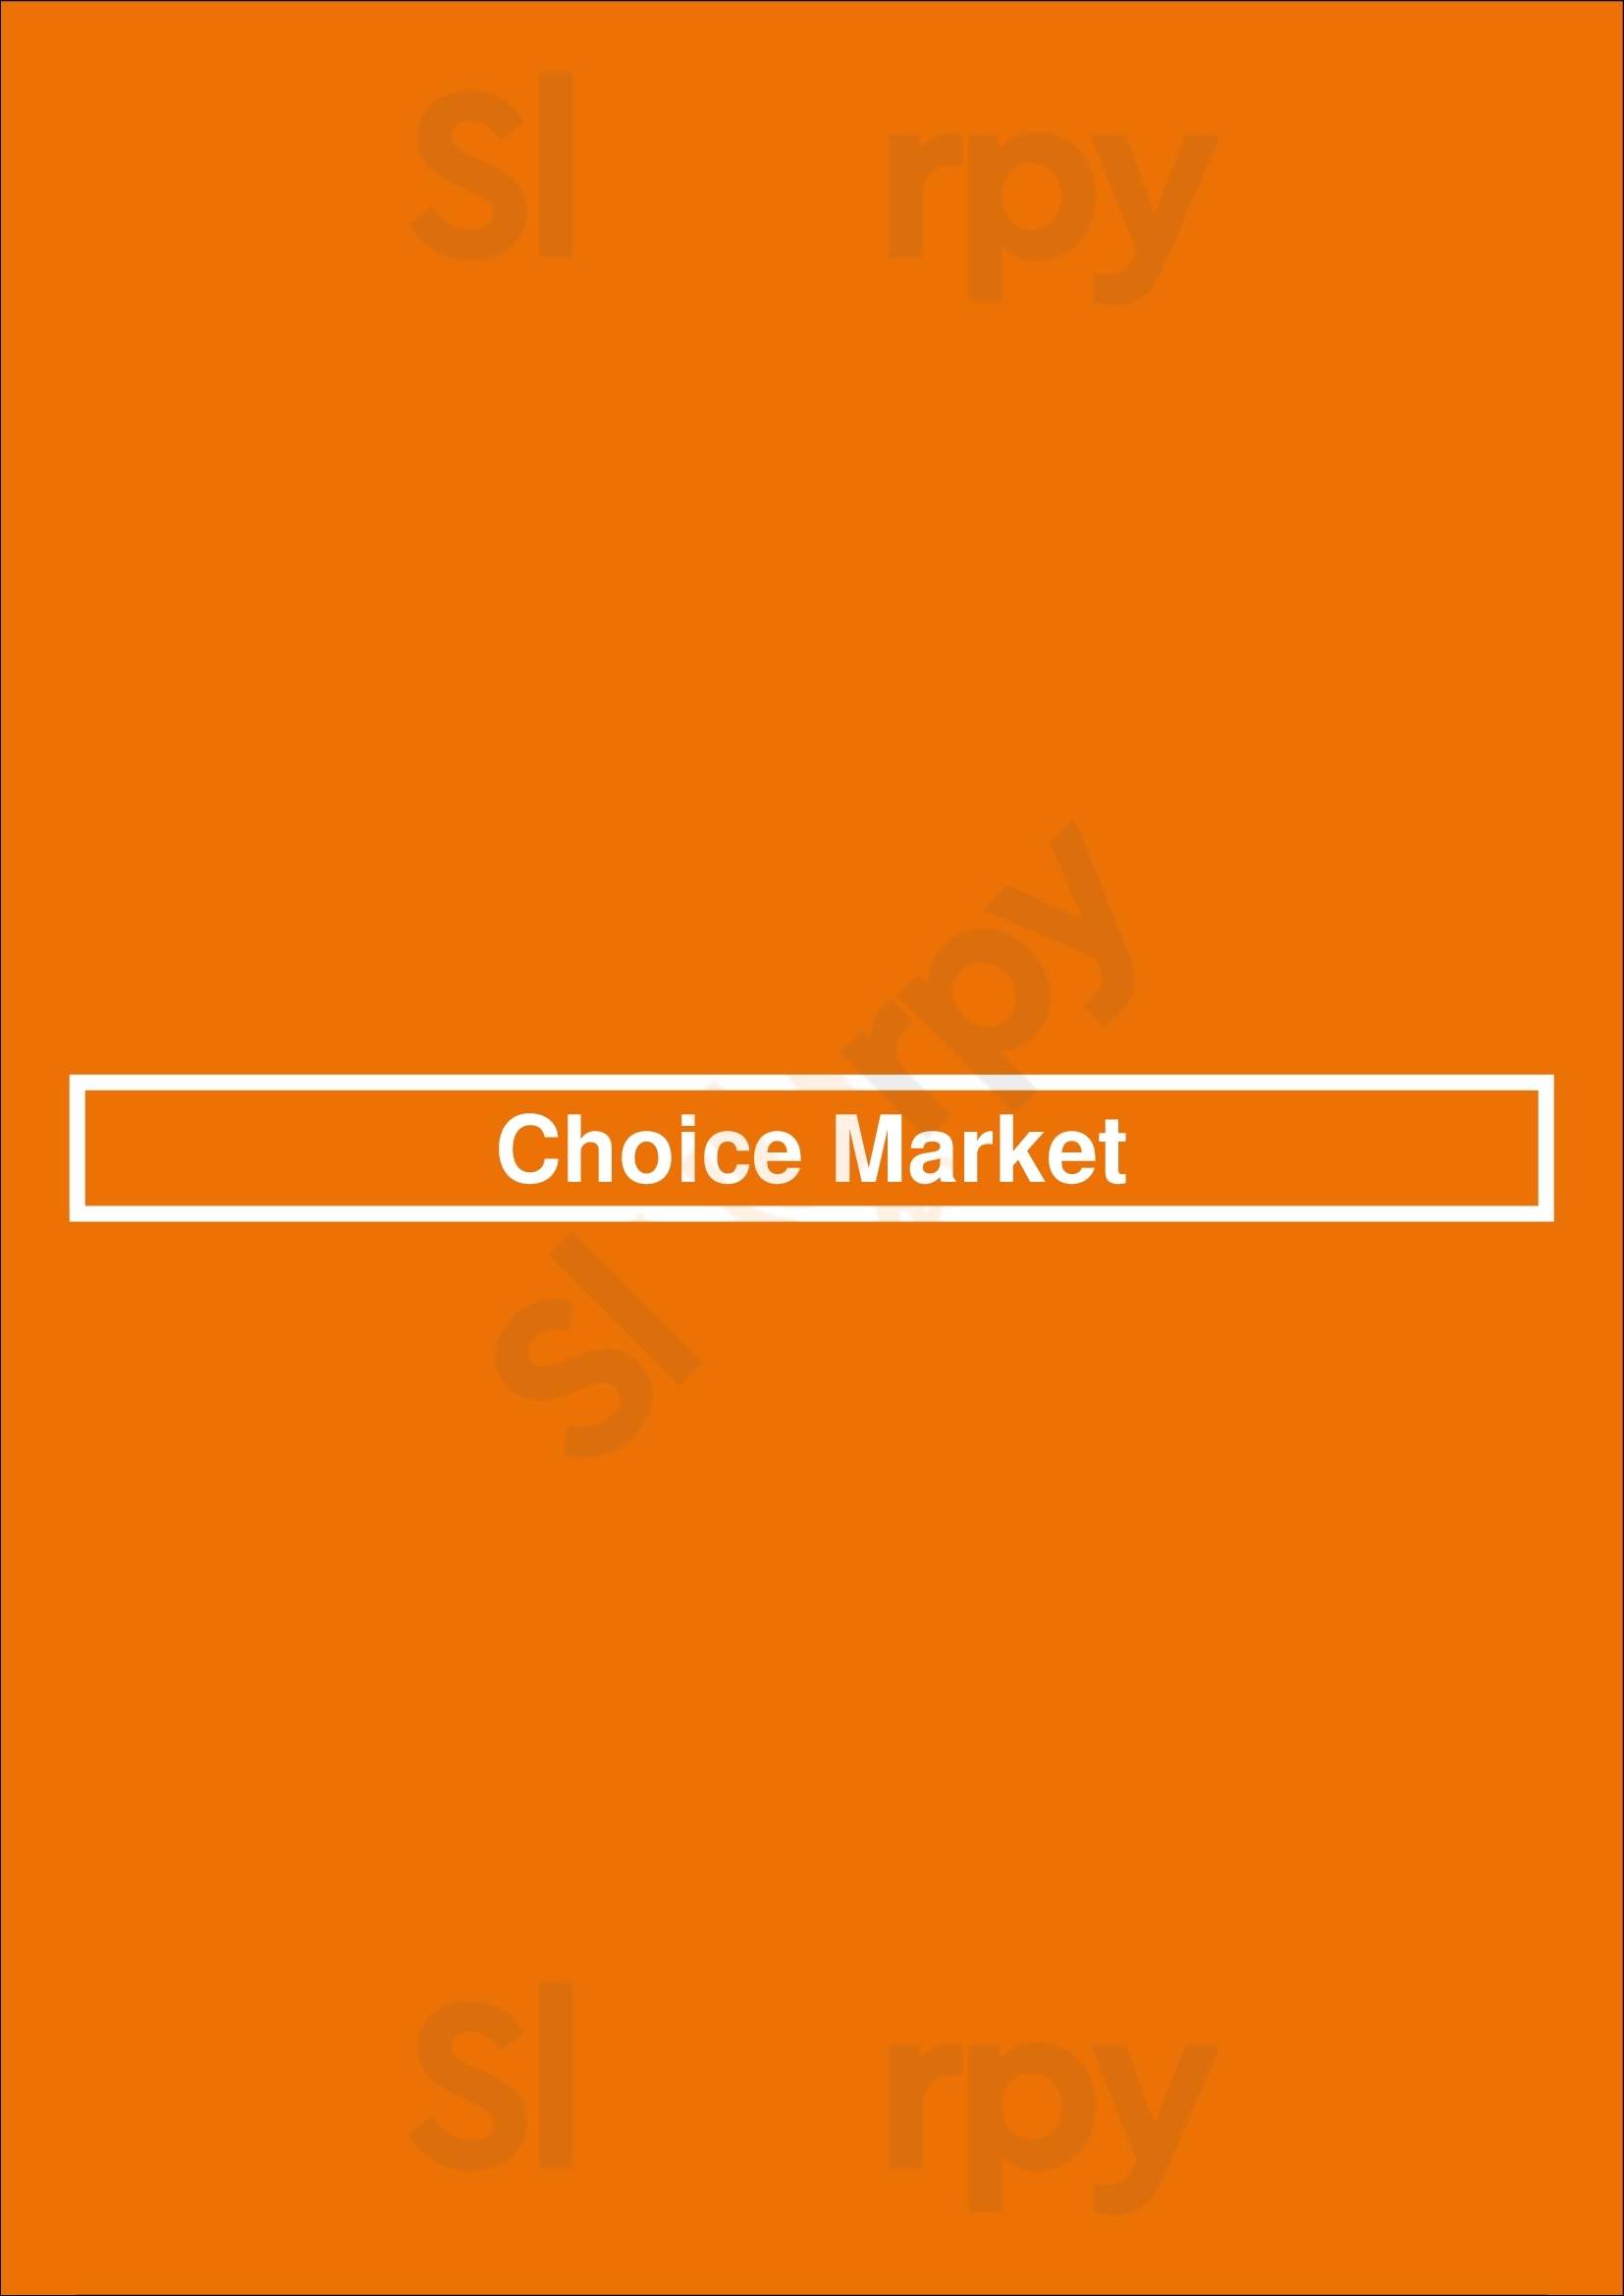 Choice Market Denver Menu - 1